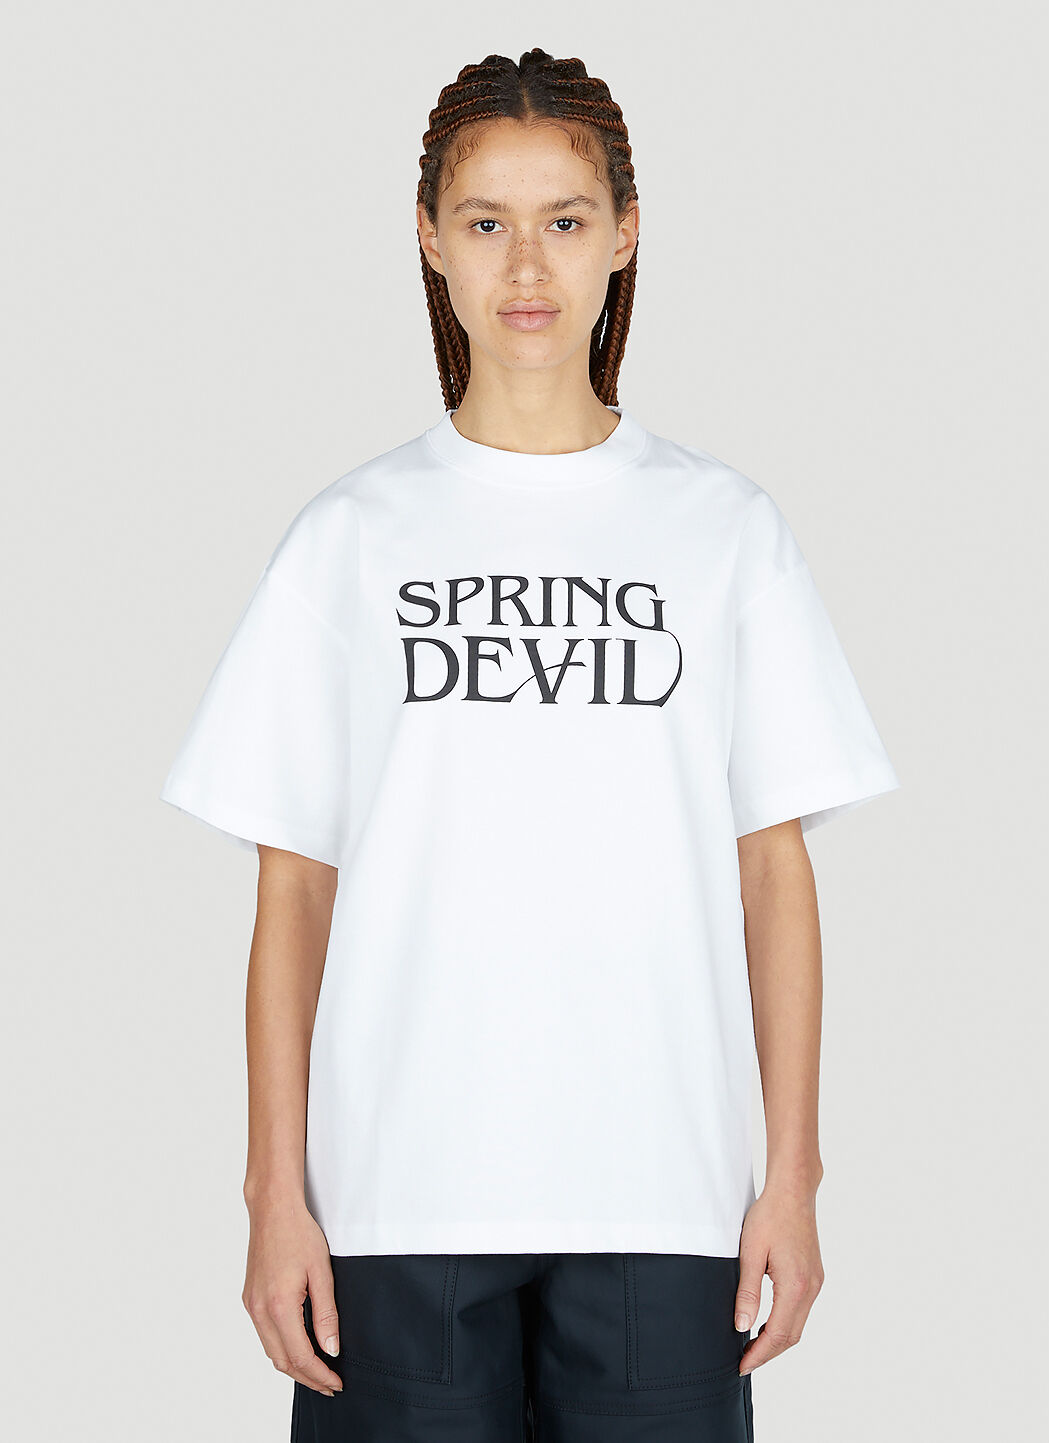 Soulland Spring Devil T-Shirt Beige sld0352020